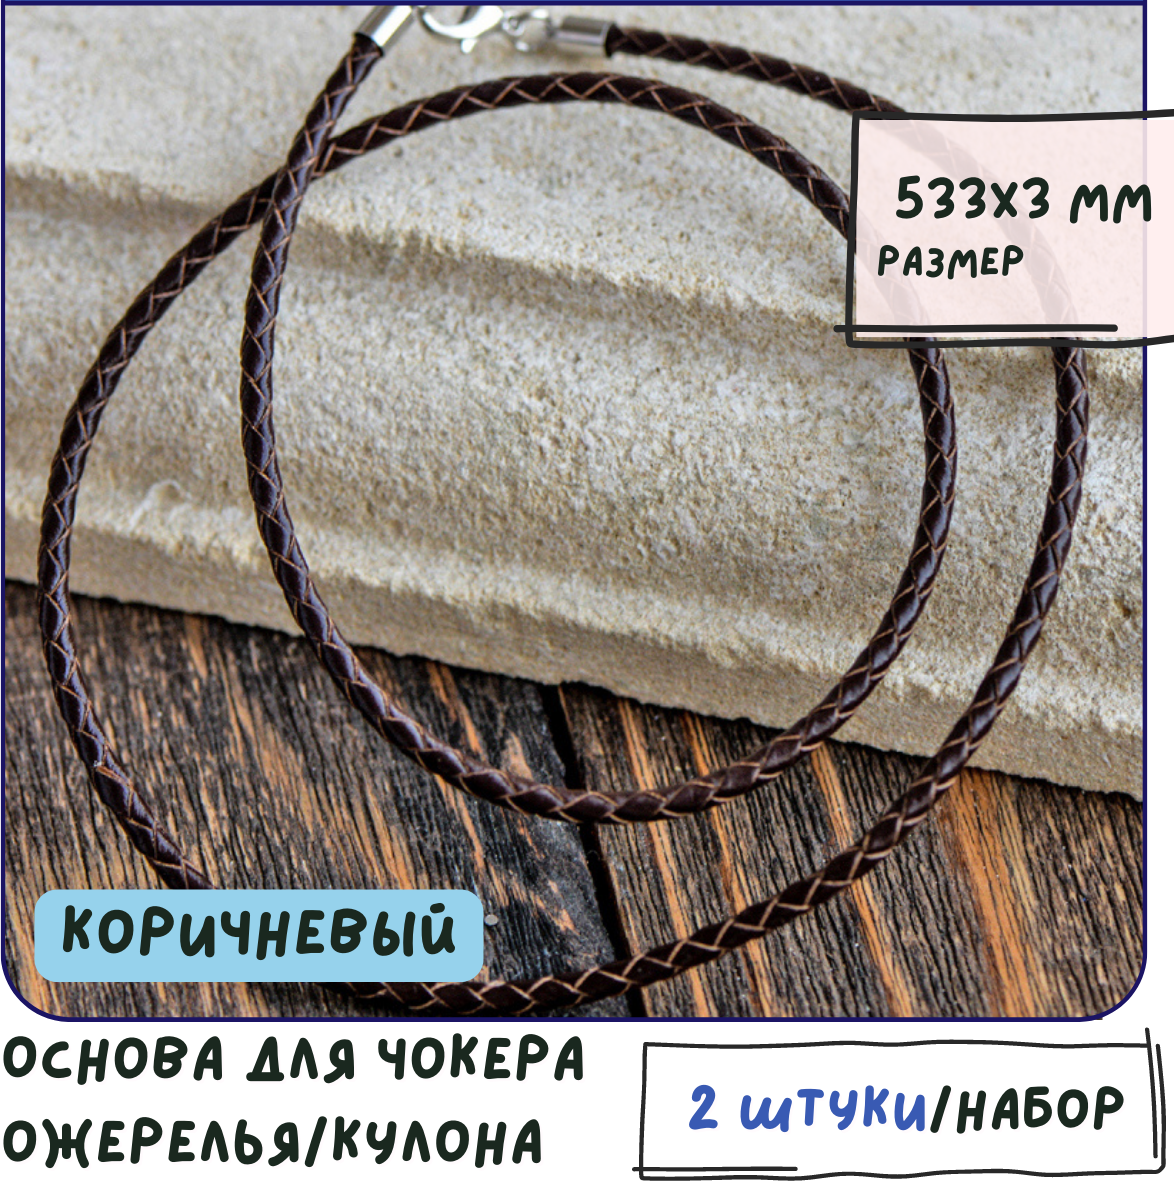 Основа для ожерелья/кулона/чокера плетеная (2 шт.), кожаный шнур размер 533х3 мм, цвет коричневый